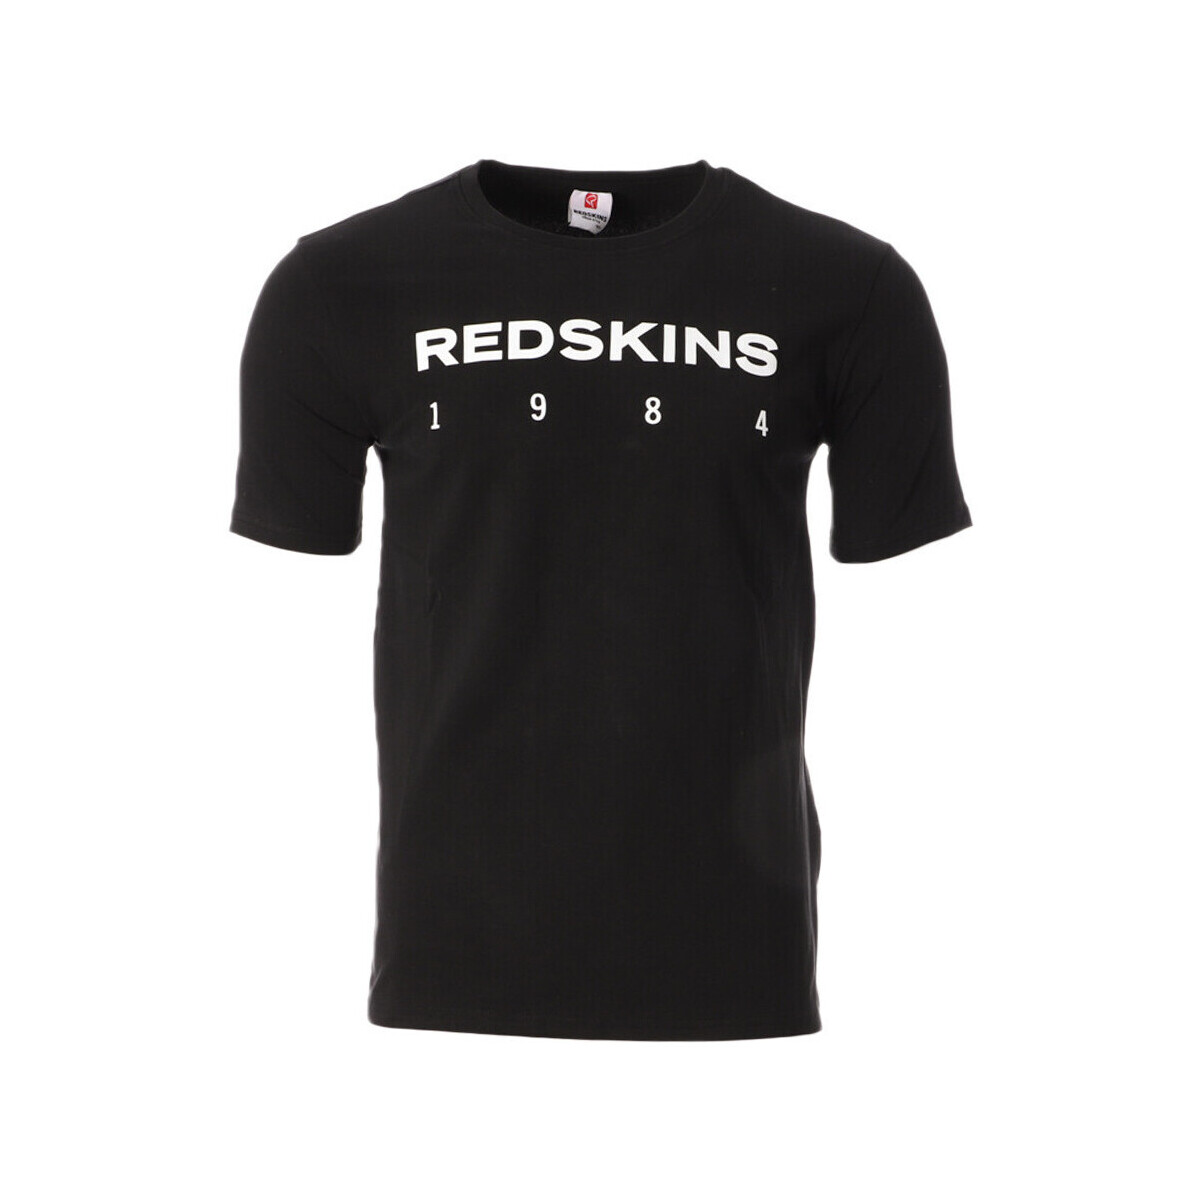 Kleidung Herren T-Shirts & Poloshirts Redskins RDS-STEELERS Schwarz